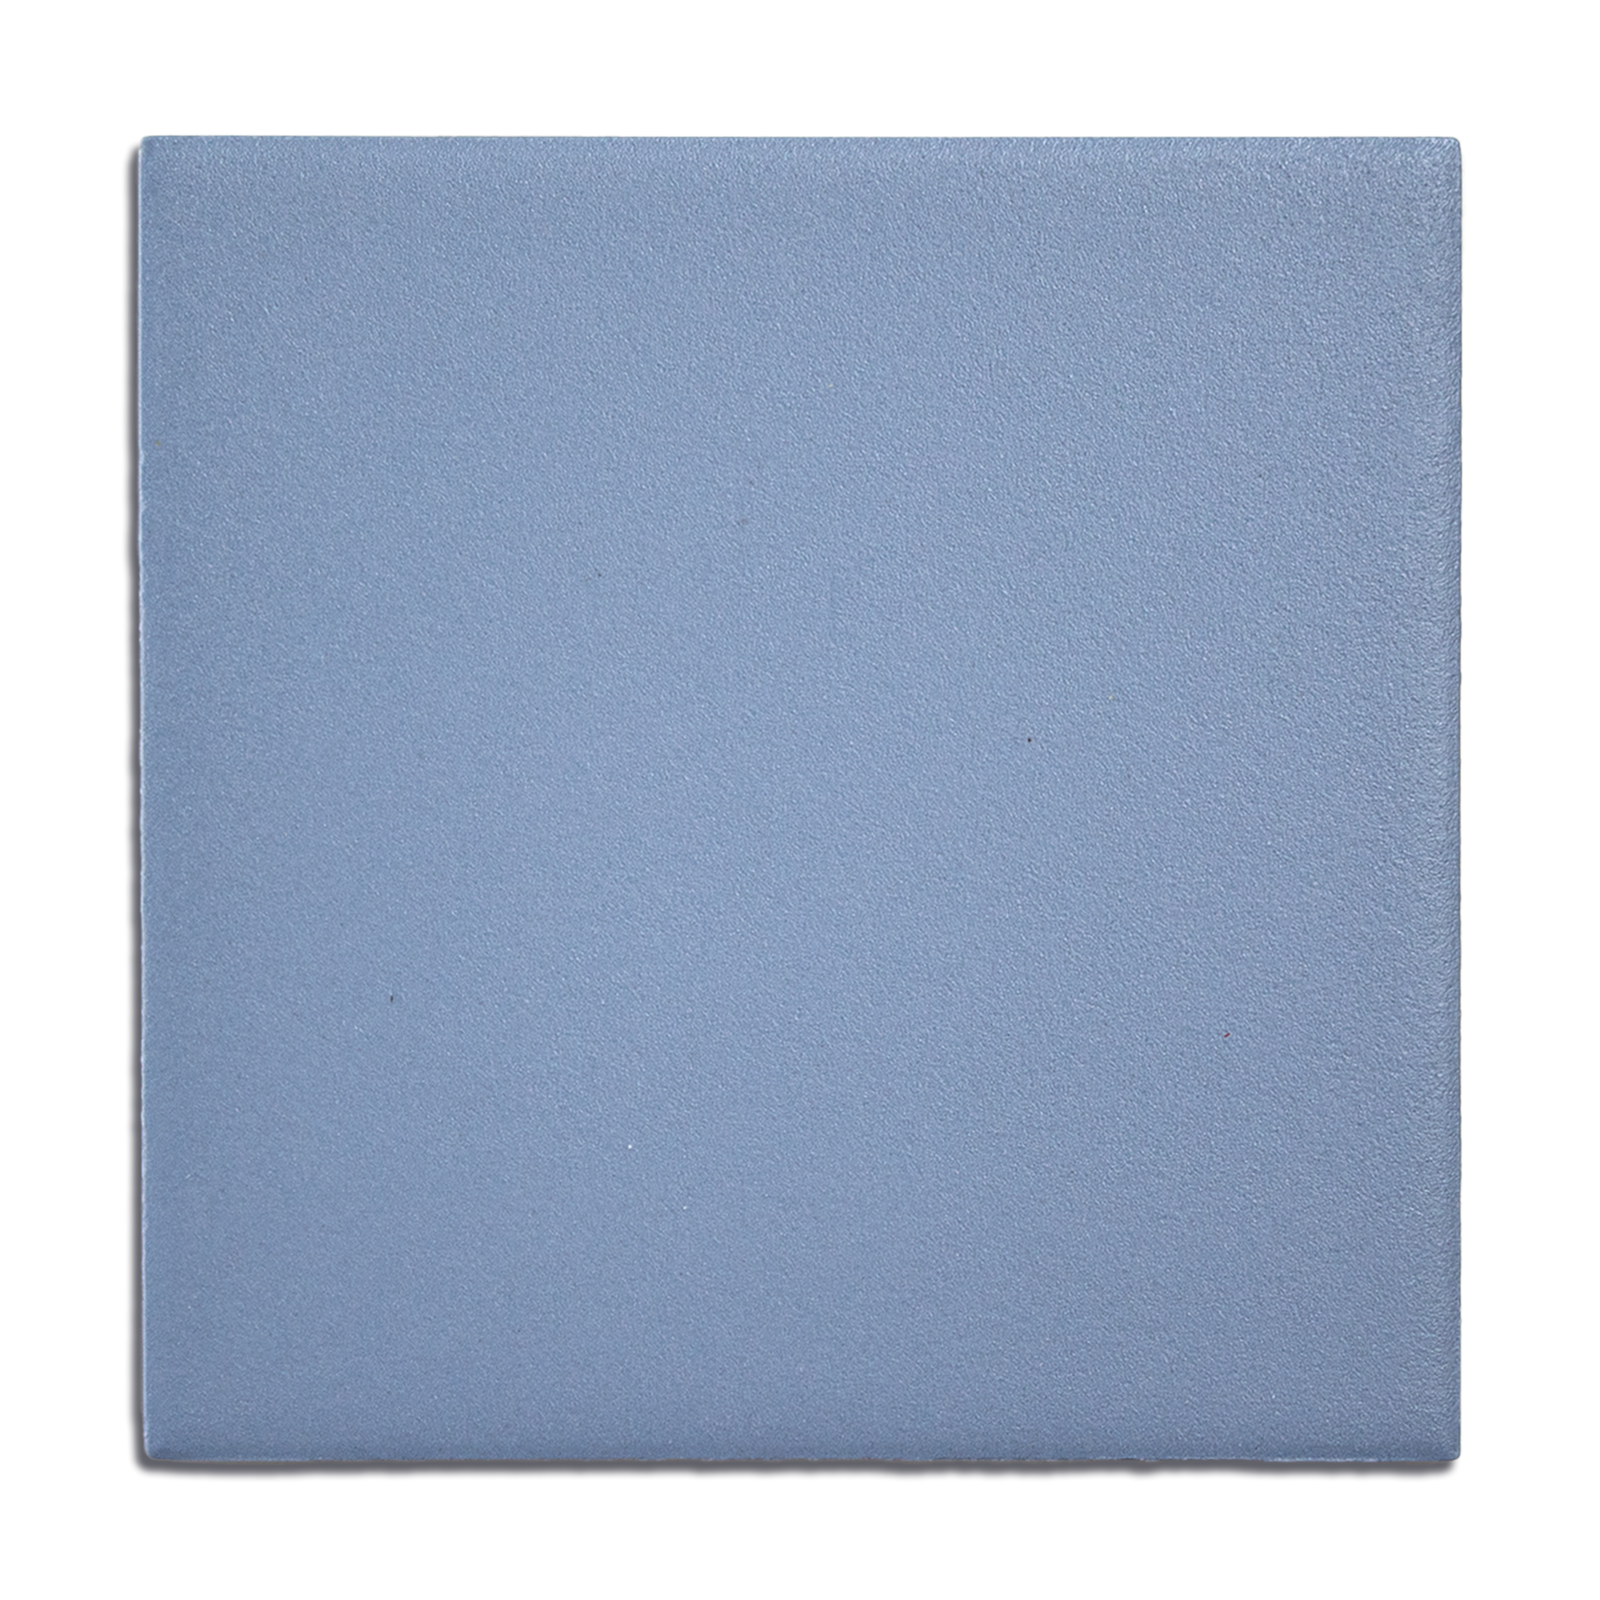 Trucco Square Cornflower Blue 5.5x5.5 Full Body Porcelain Tile